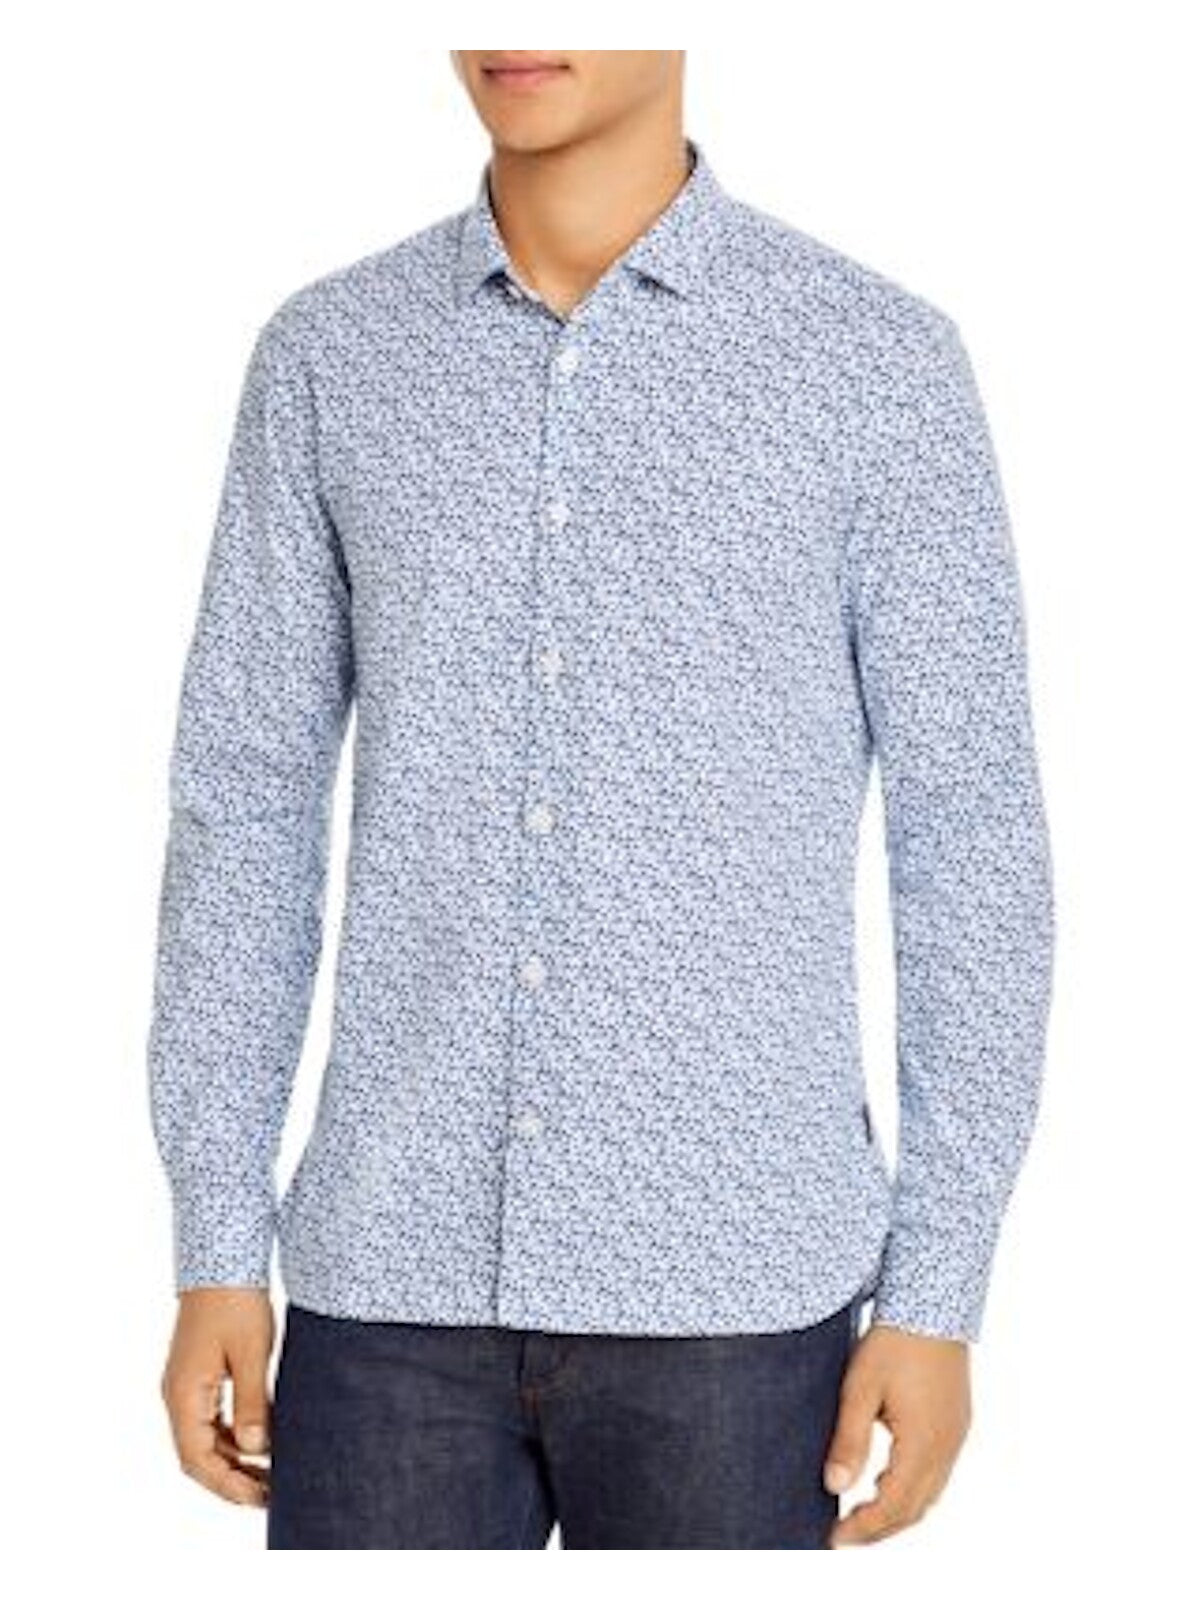 John Varvatos Mens Blue Floral Button Down Cotton Blend Casual Shirt L